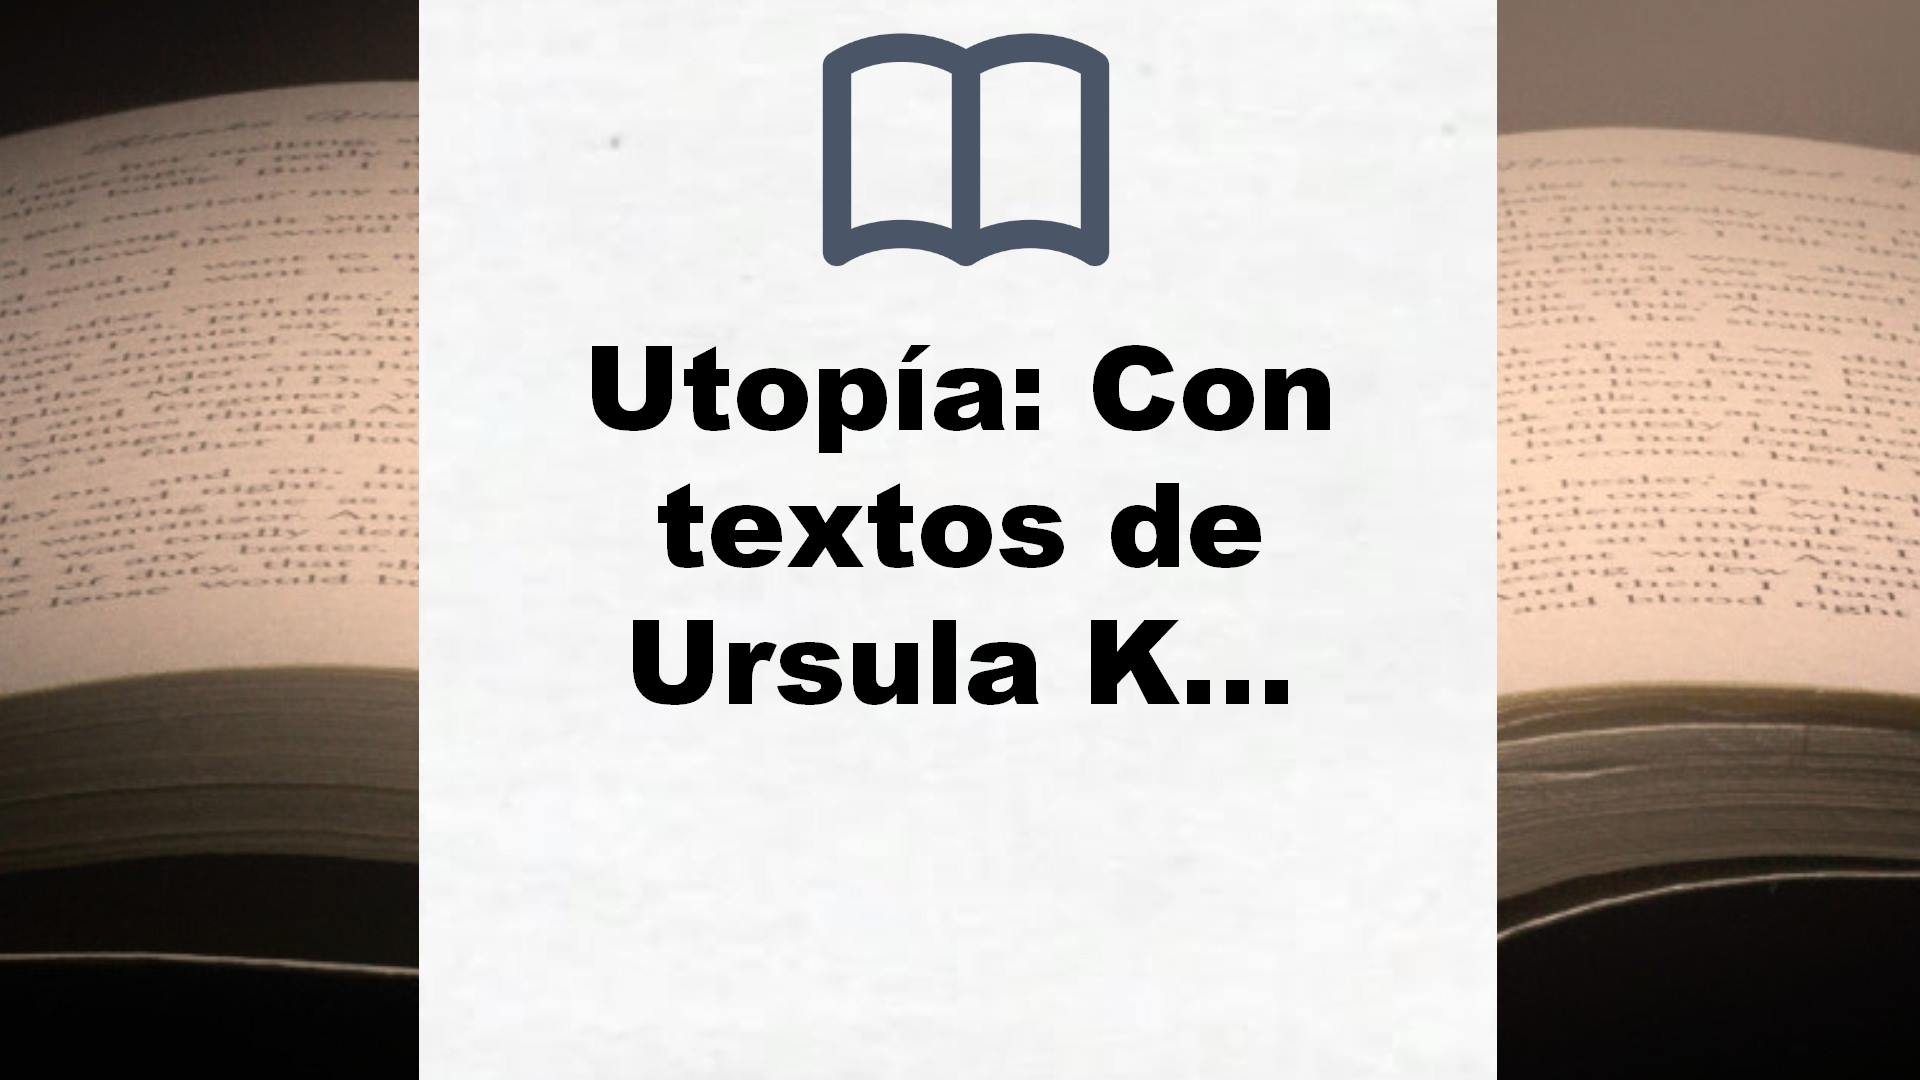 Utopía: Con textos de Ursula K. Le Guin. Introducción de China Miéville (Ariel) – Reseña del libro